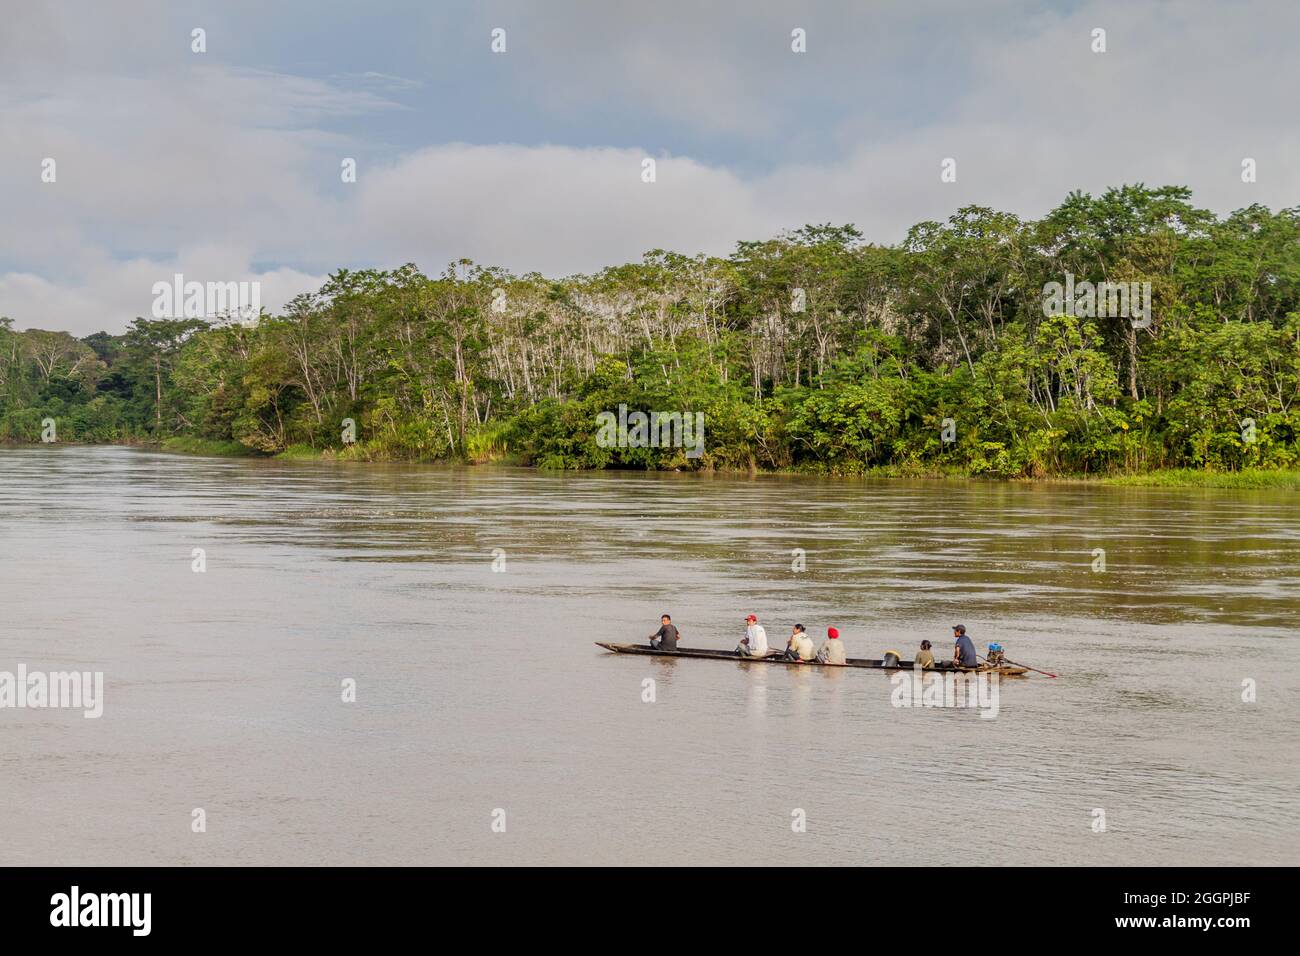 PANTOJA, PERÚ - 9 DE JULIO de 2015: Aldeanos en una canoa de dugout llamada Peke Peke en un río Napo, Perú Foto de stock